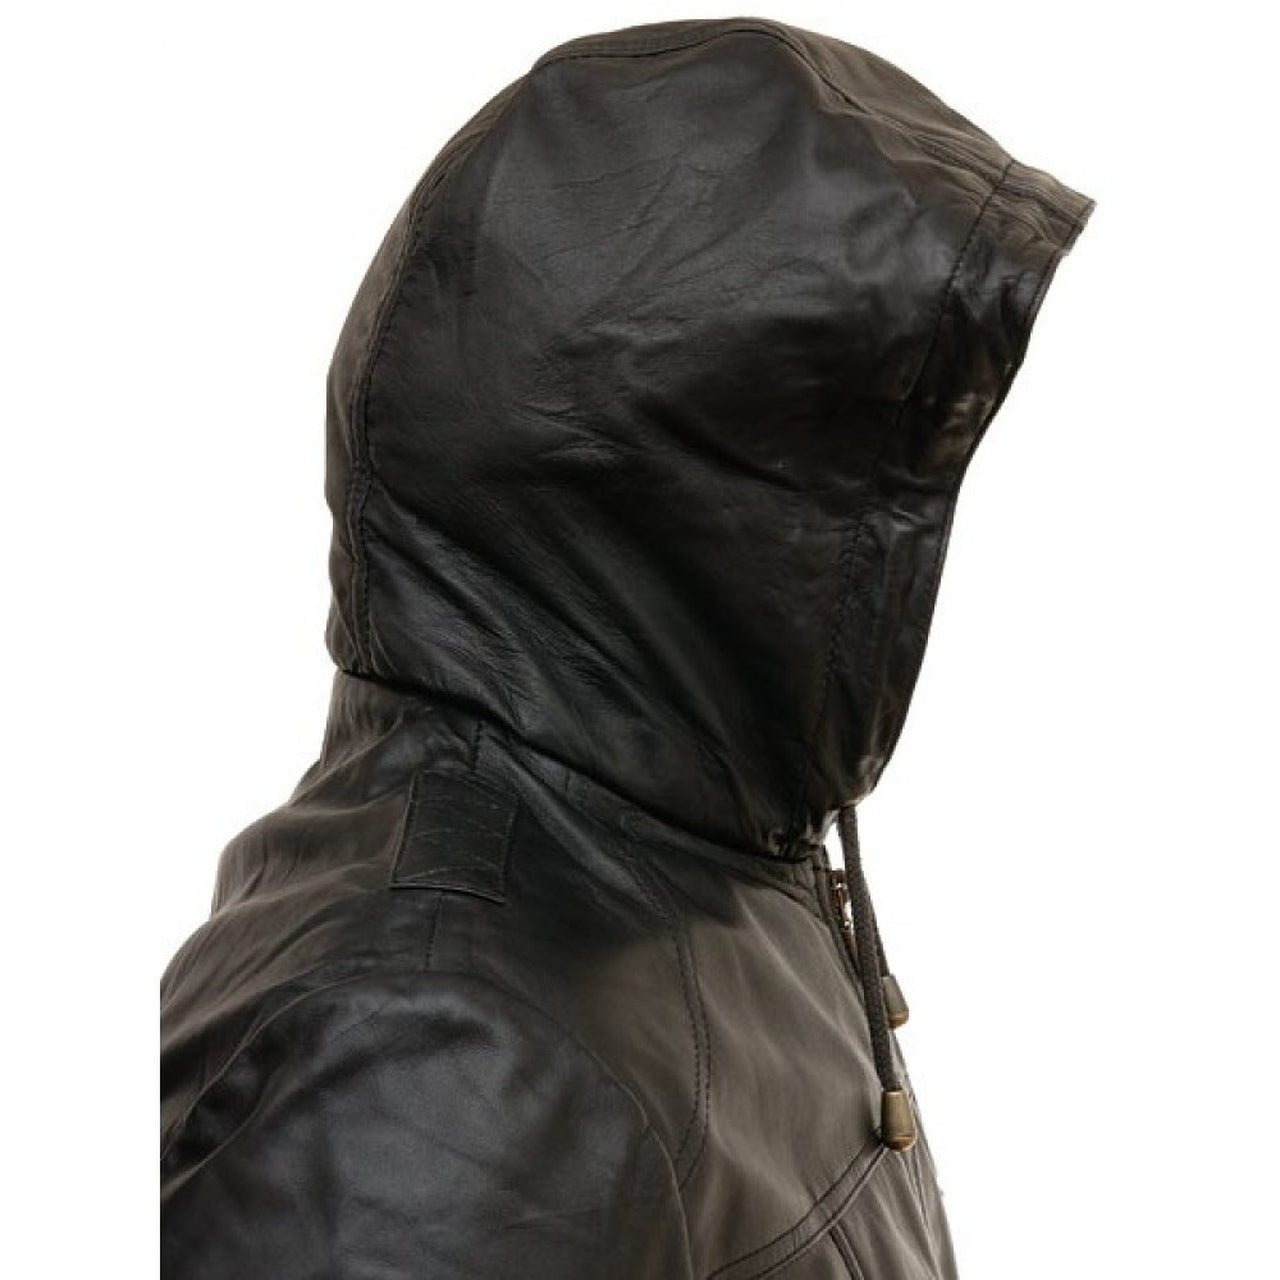 Men Genuine Leather Hooded Bomber Jacket - Leather Jacket